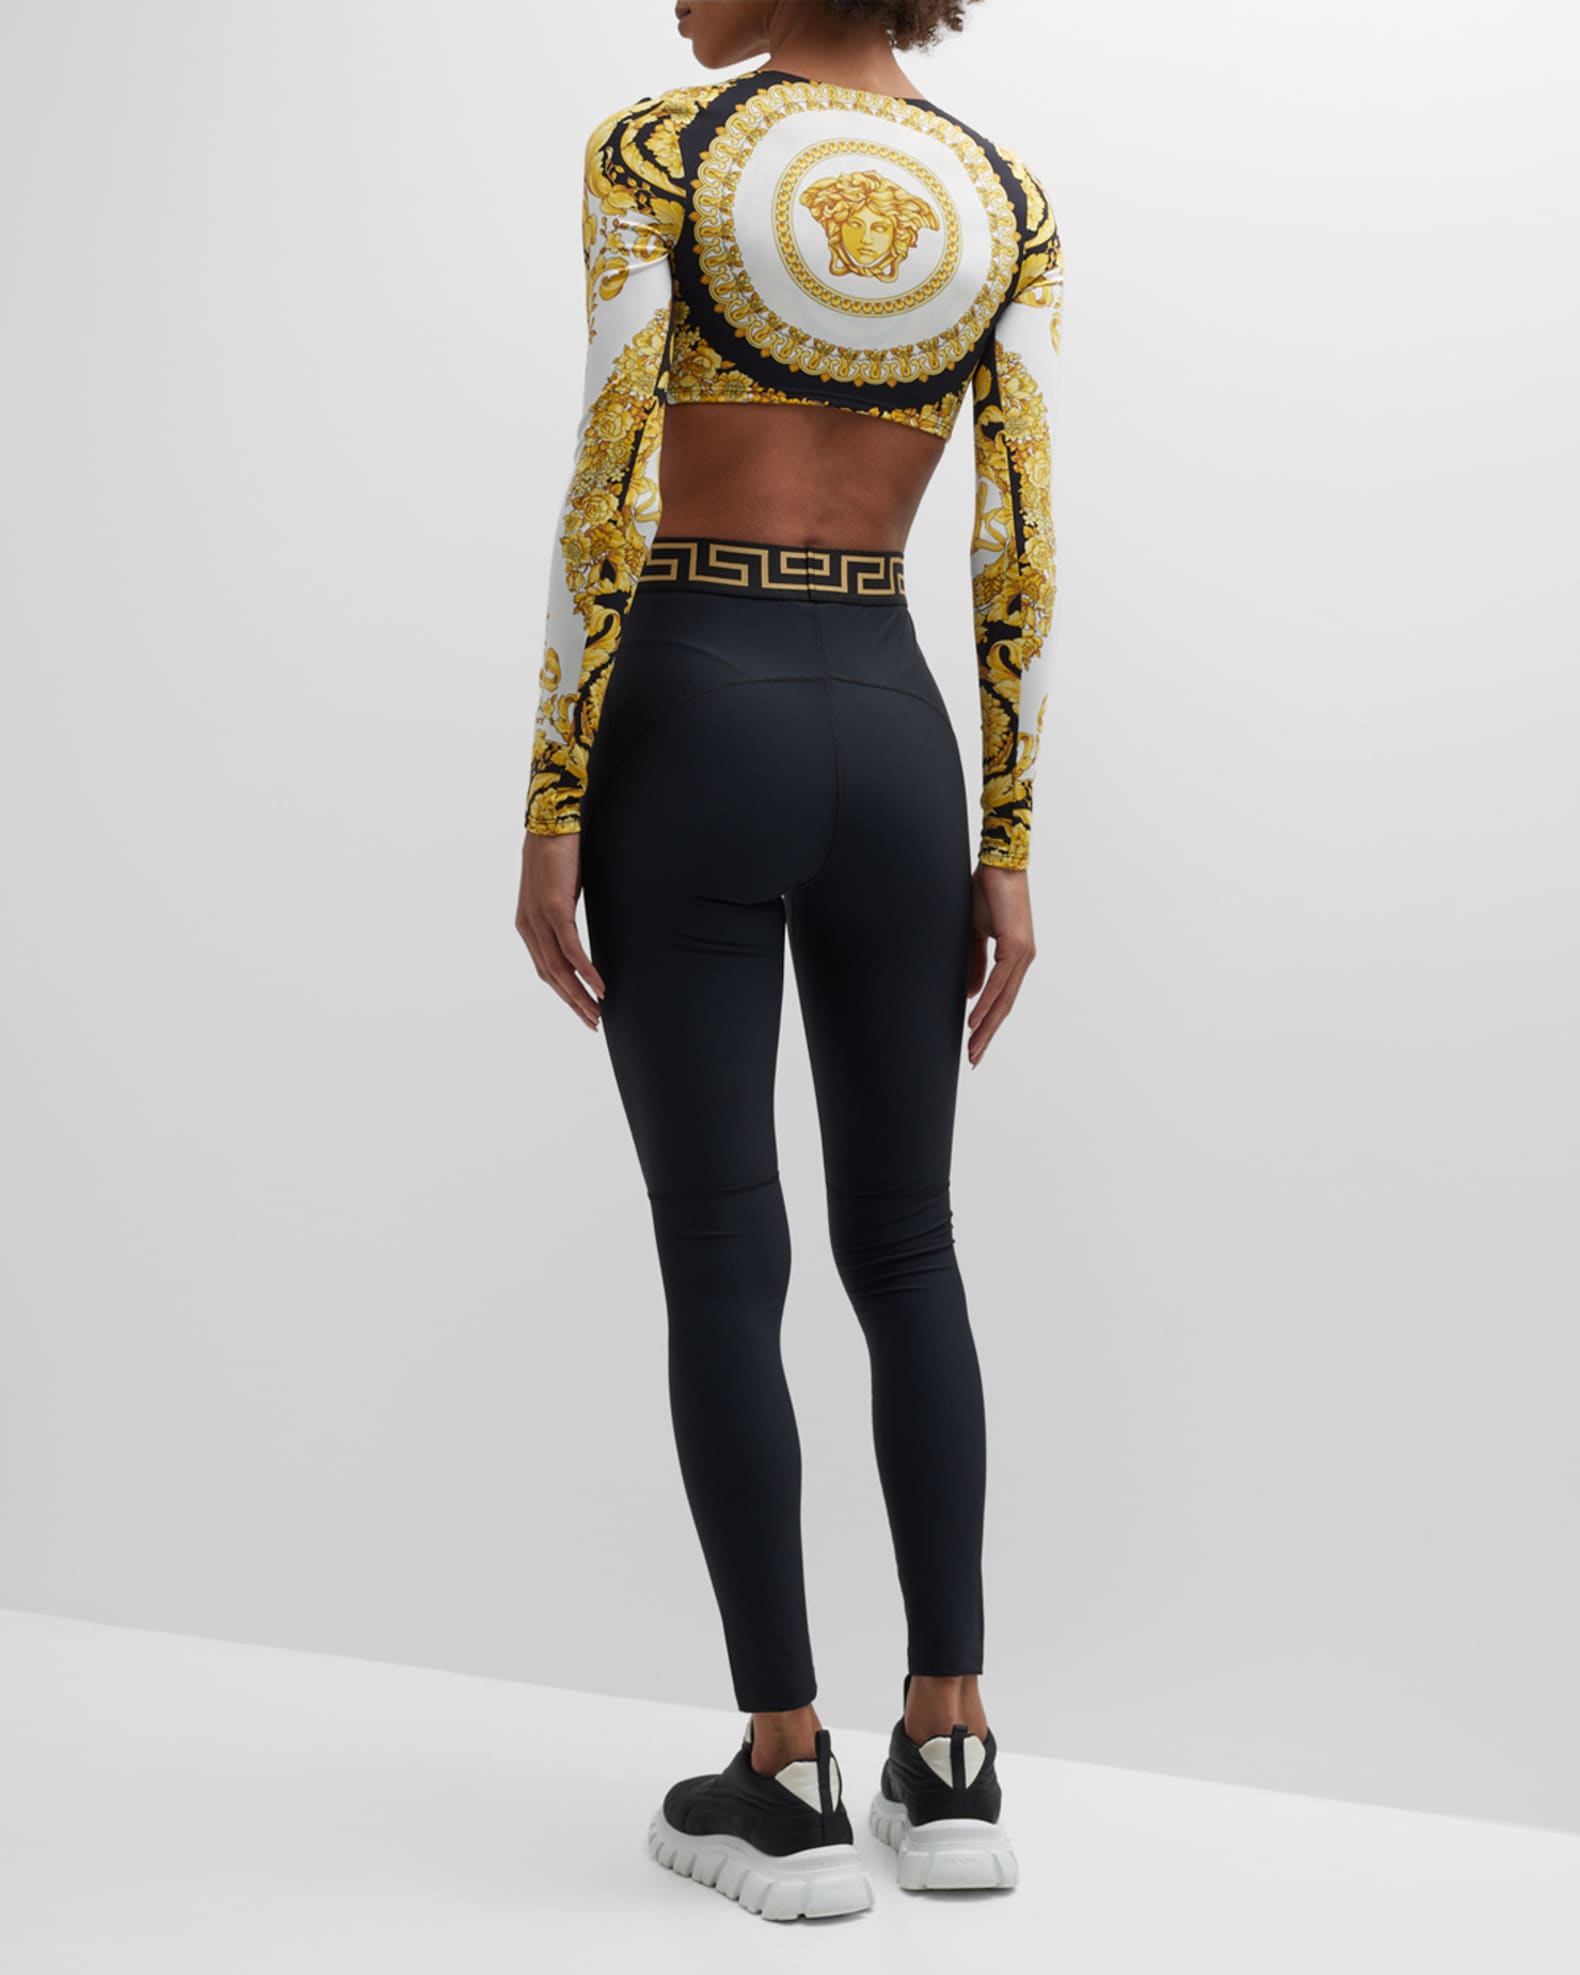 Versace La Greca high-waisted leggings - ShopStyle